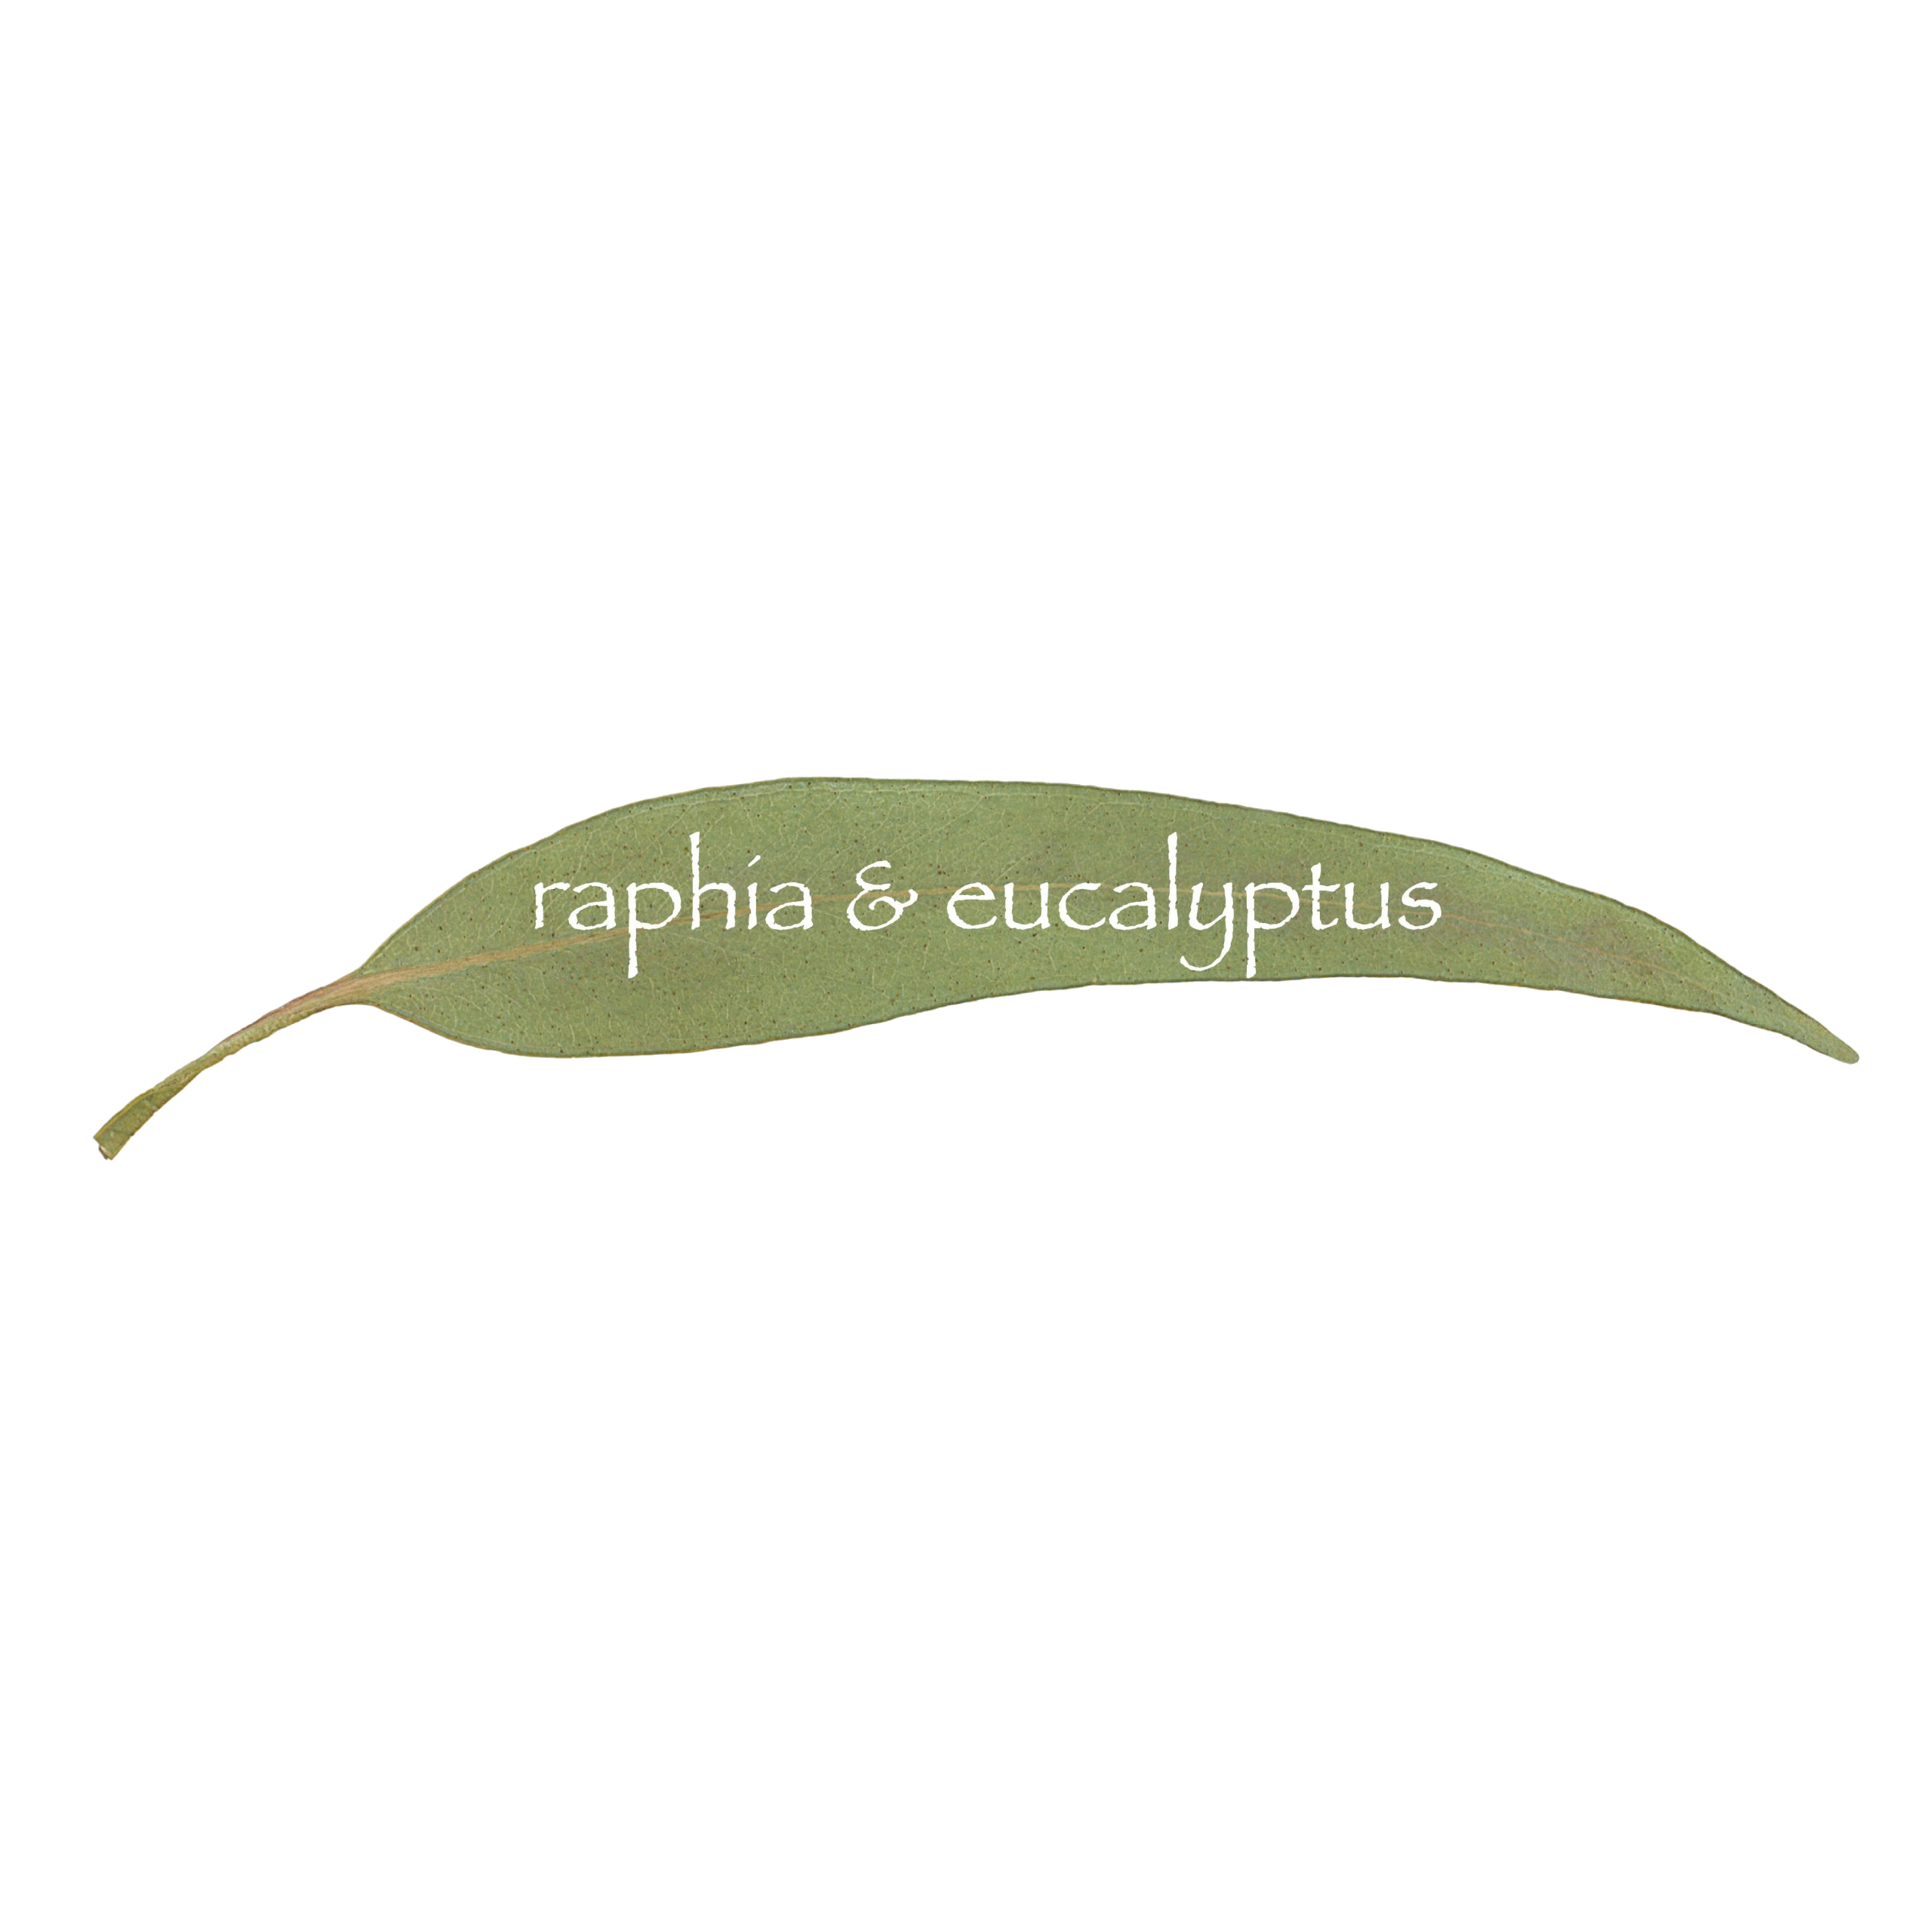 raphia & eucalyptus Barcelona